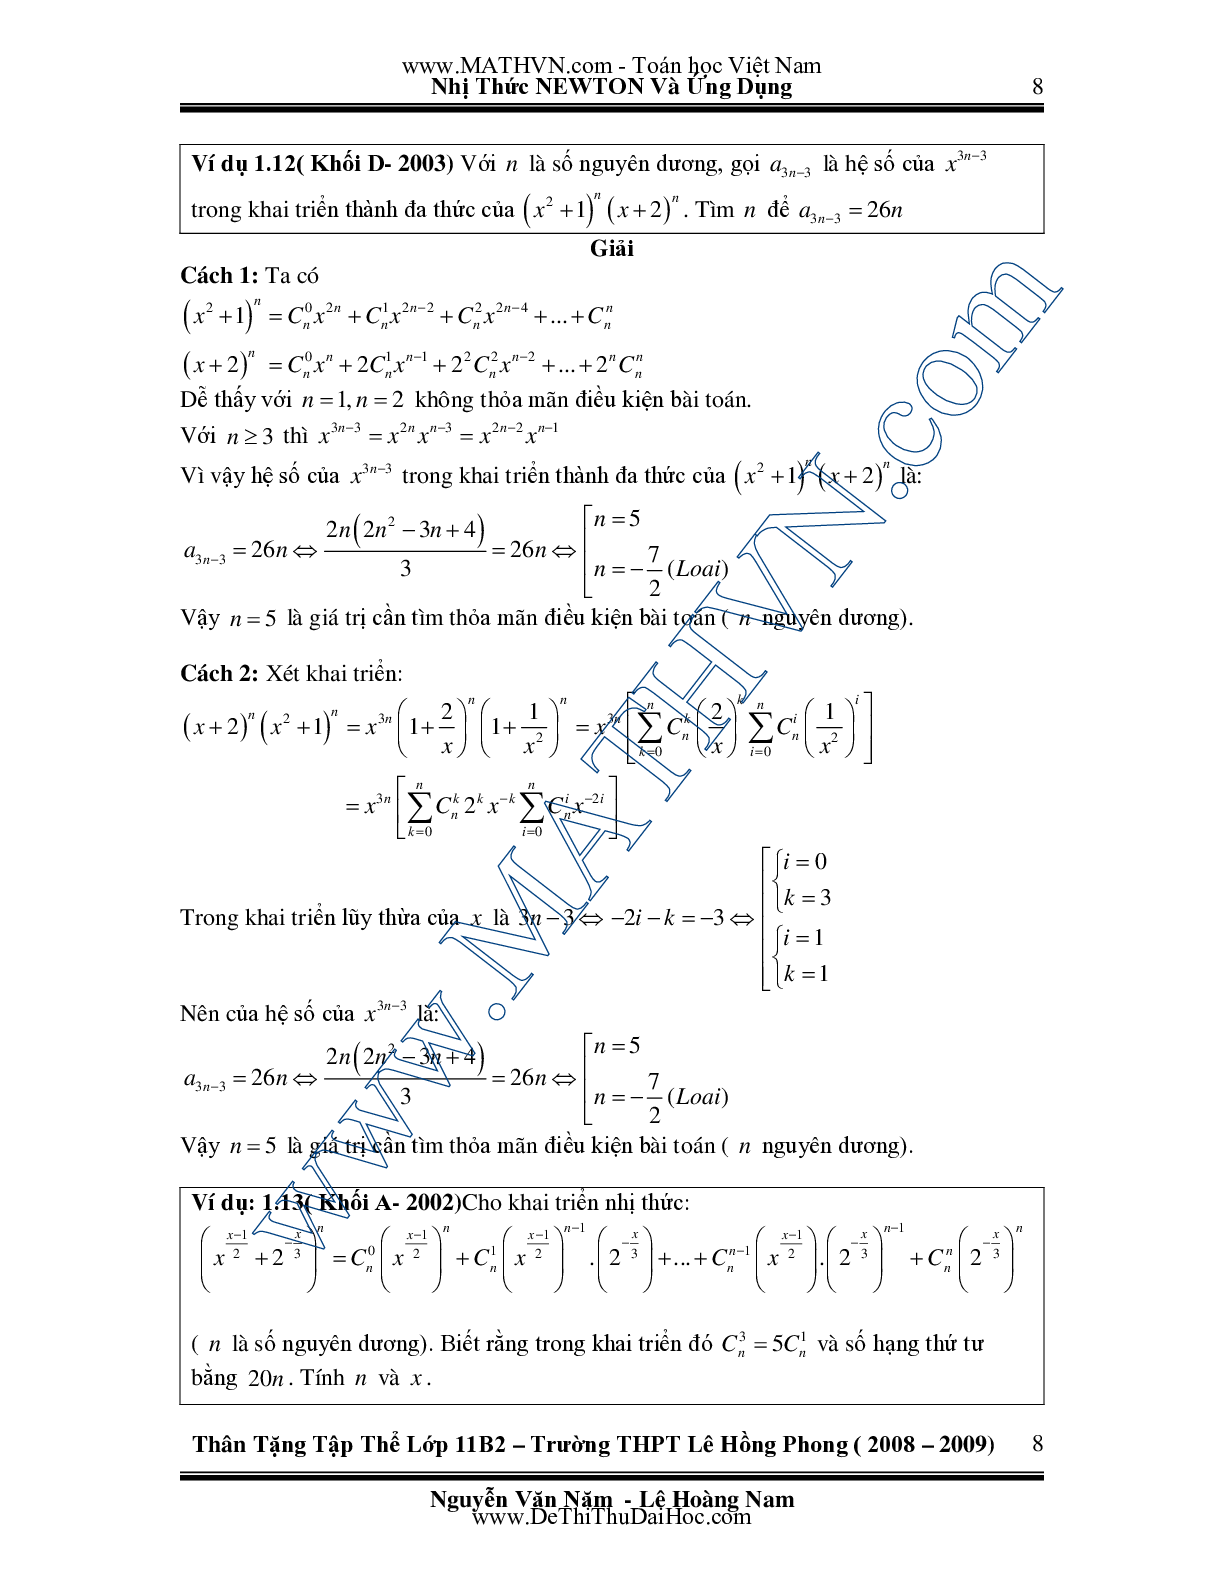 Chuyên đề Nhị thức Newton và ứng dụng môn Toán lớp 11 (trang 8)